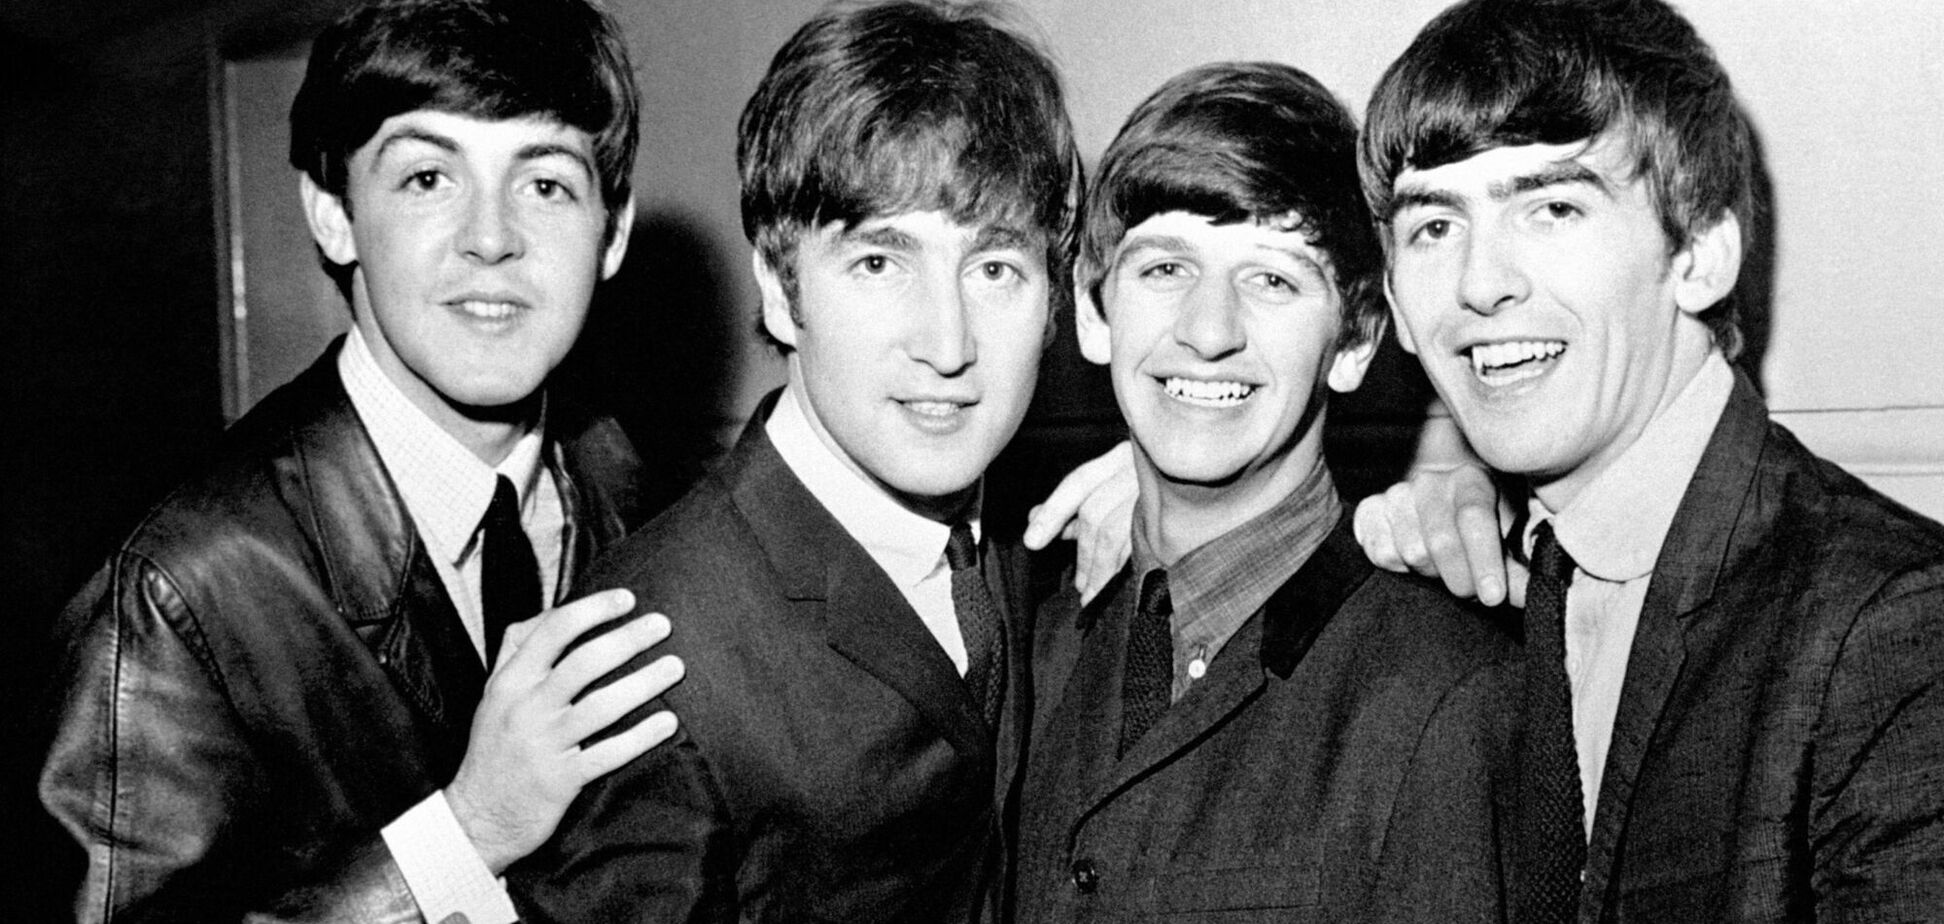 Опубликованы уникальные фото группы The Beatles, сделанные в 1966 году